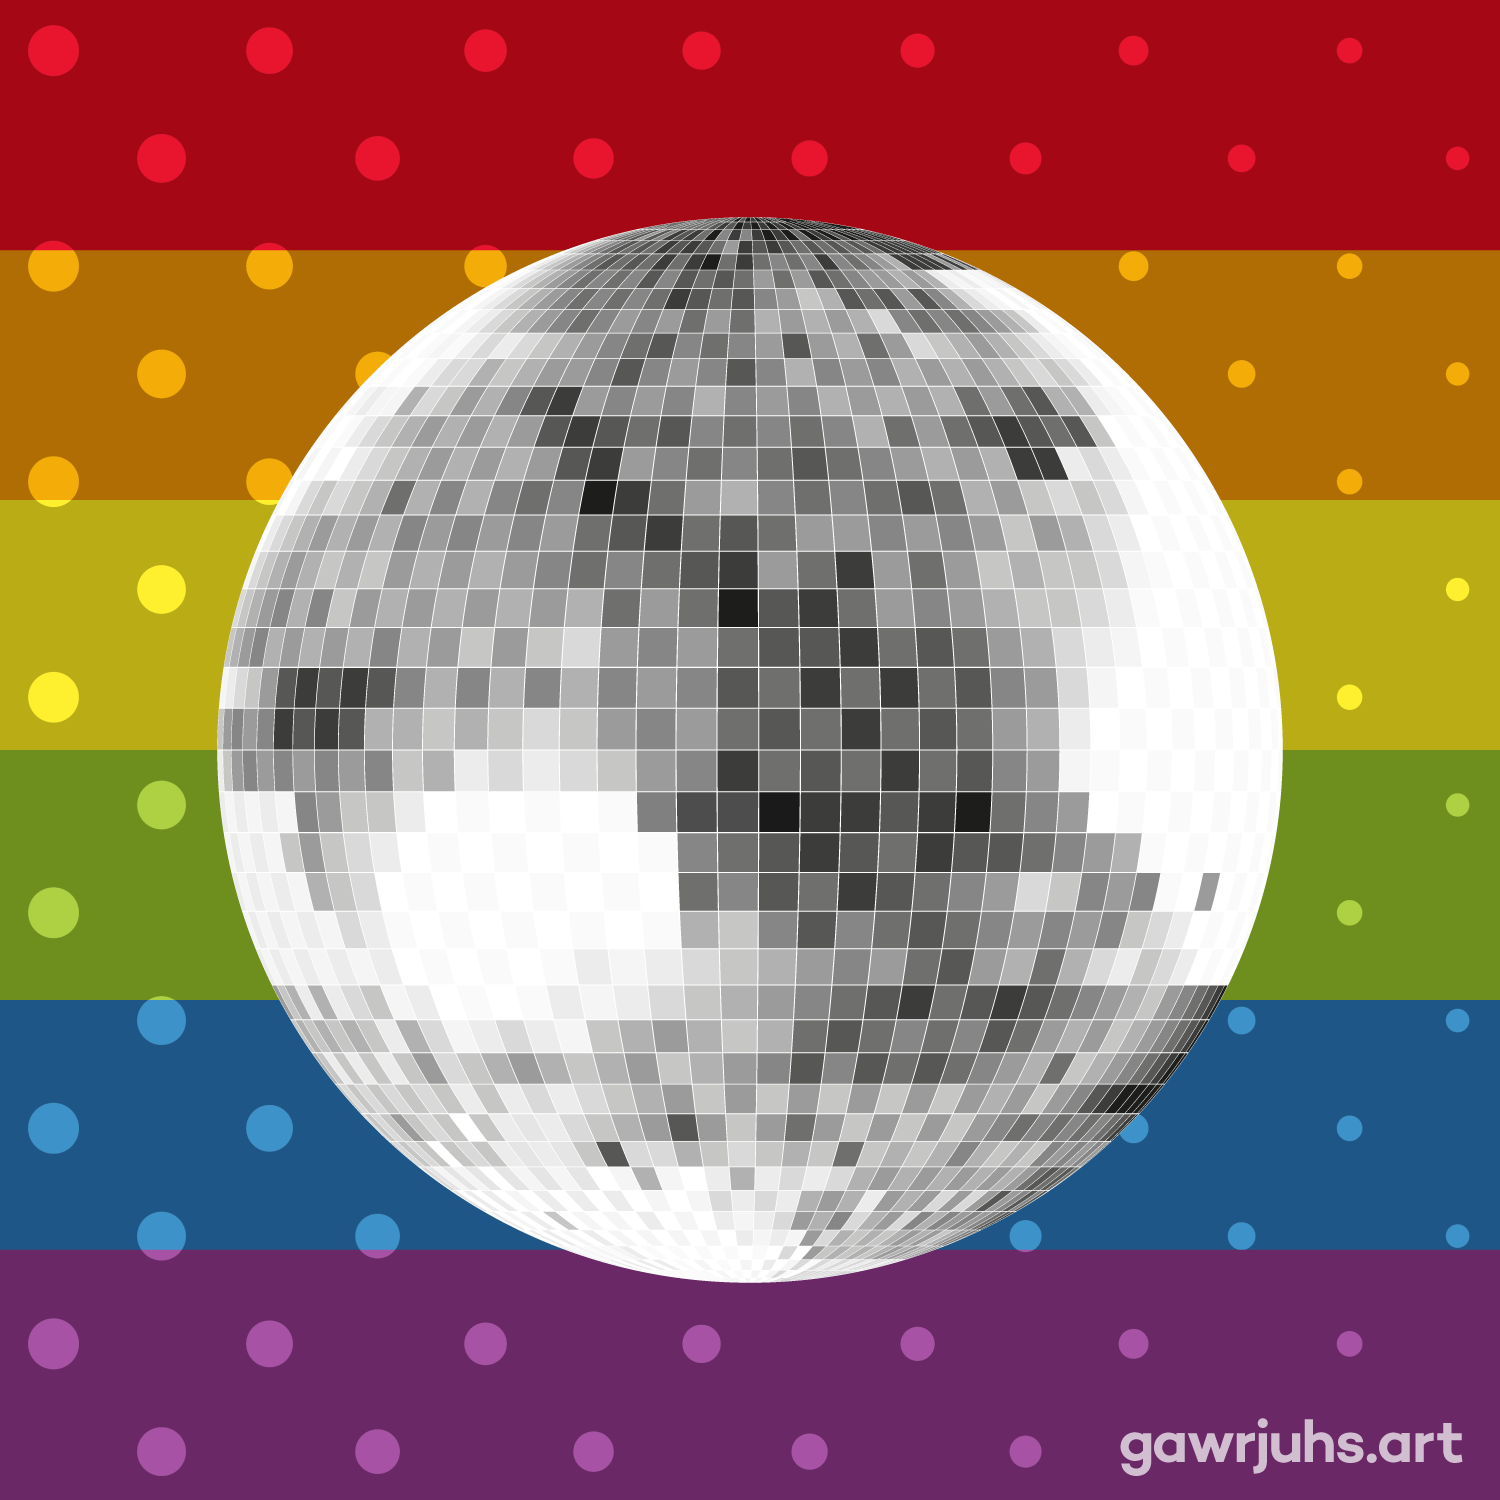 gawrjuhs-art-lgbtq-mirrorball-square